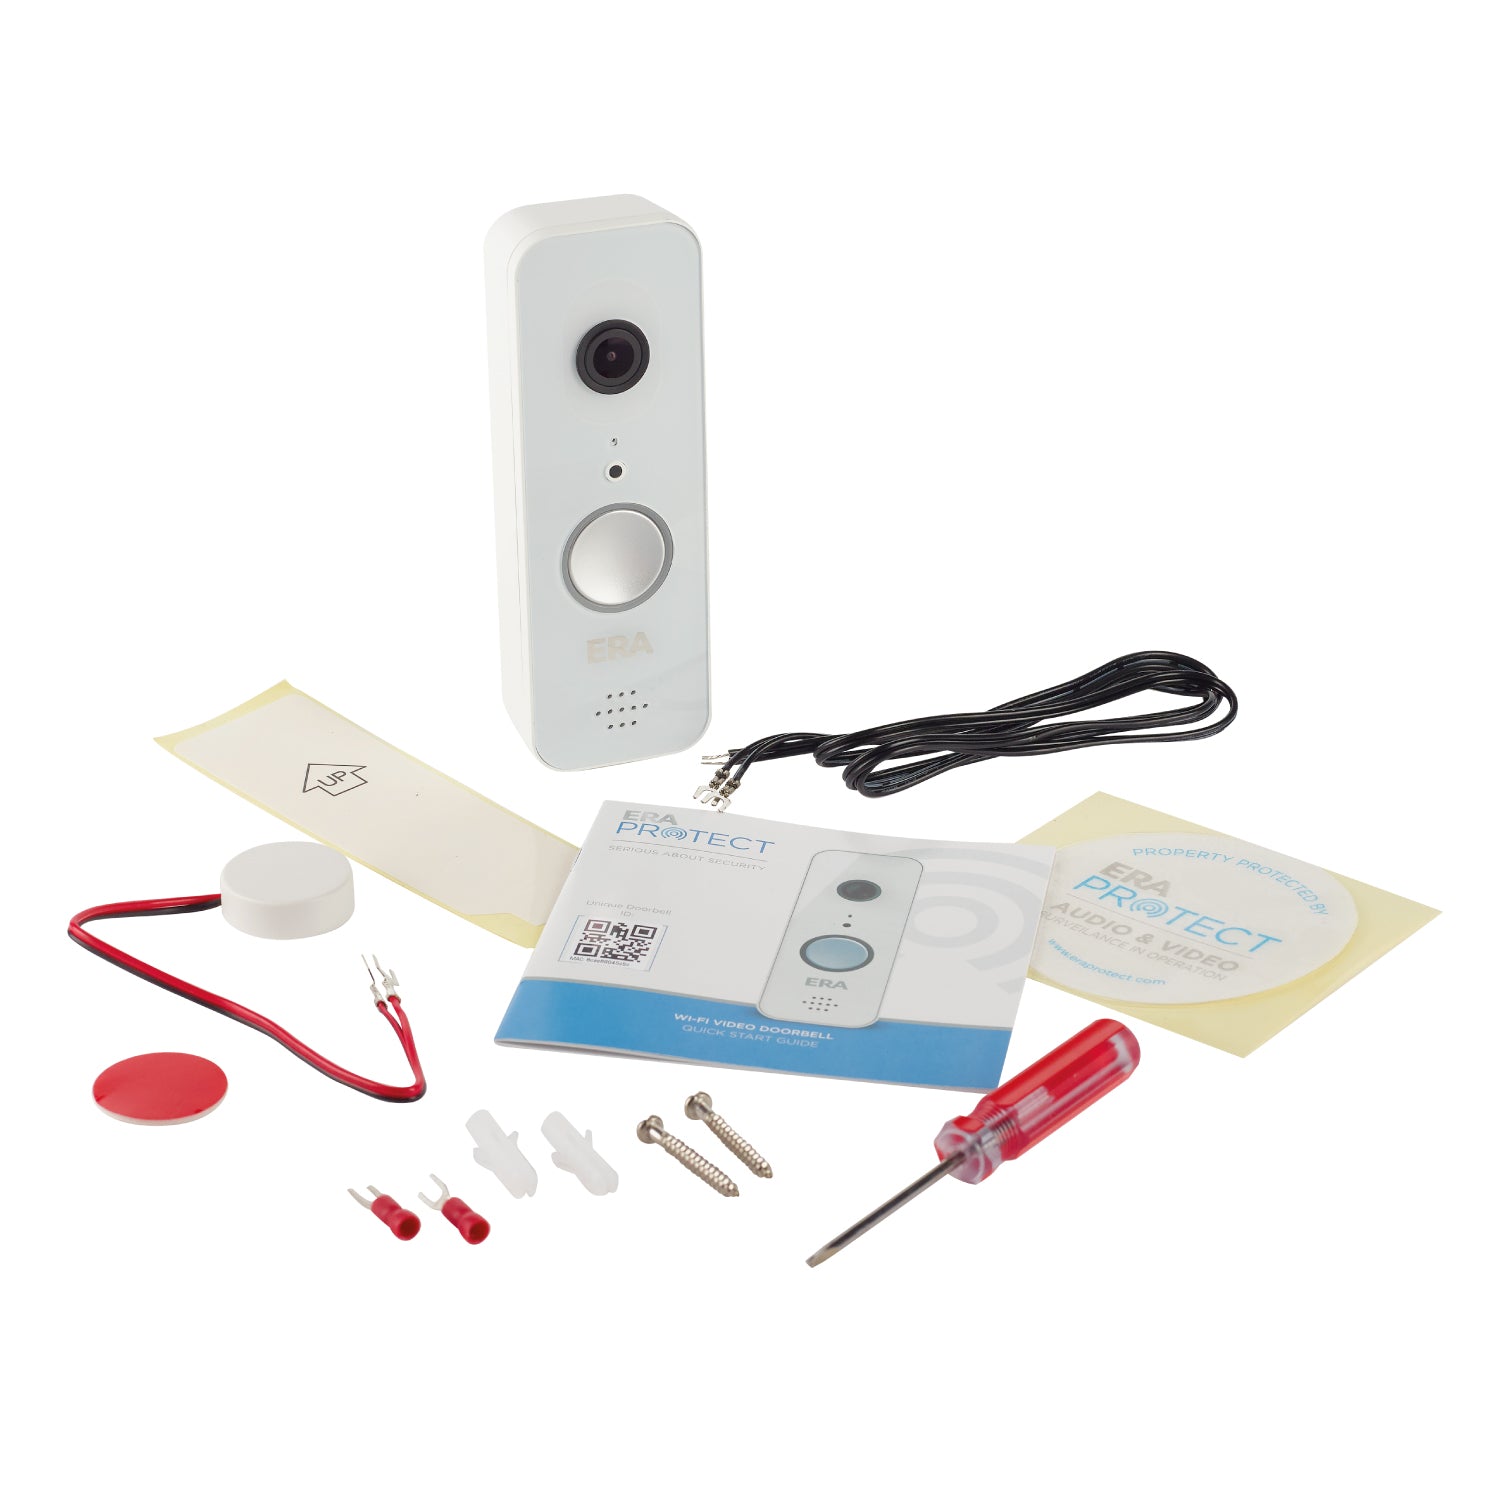 ERA Protect Smart Home Video Doorbell